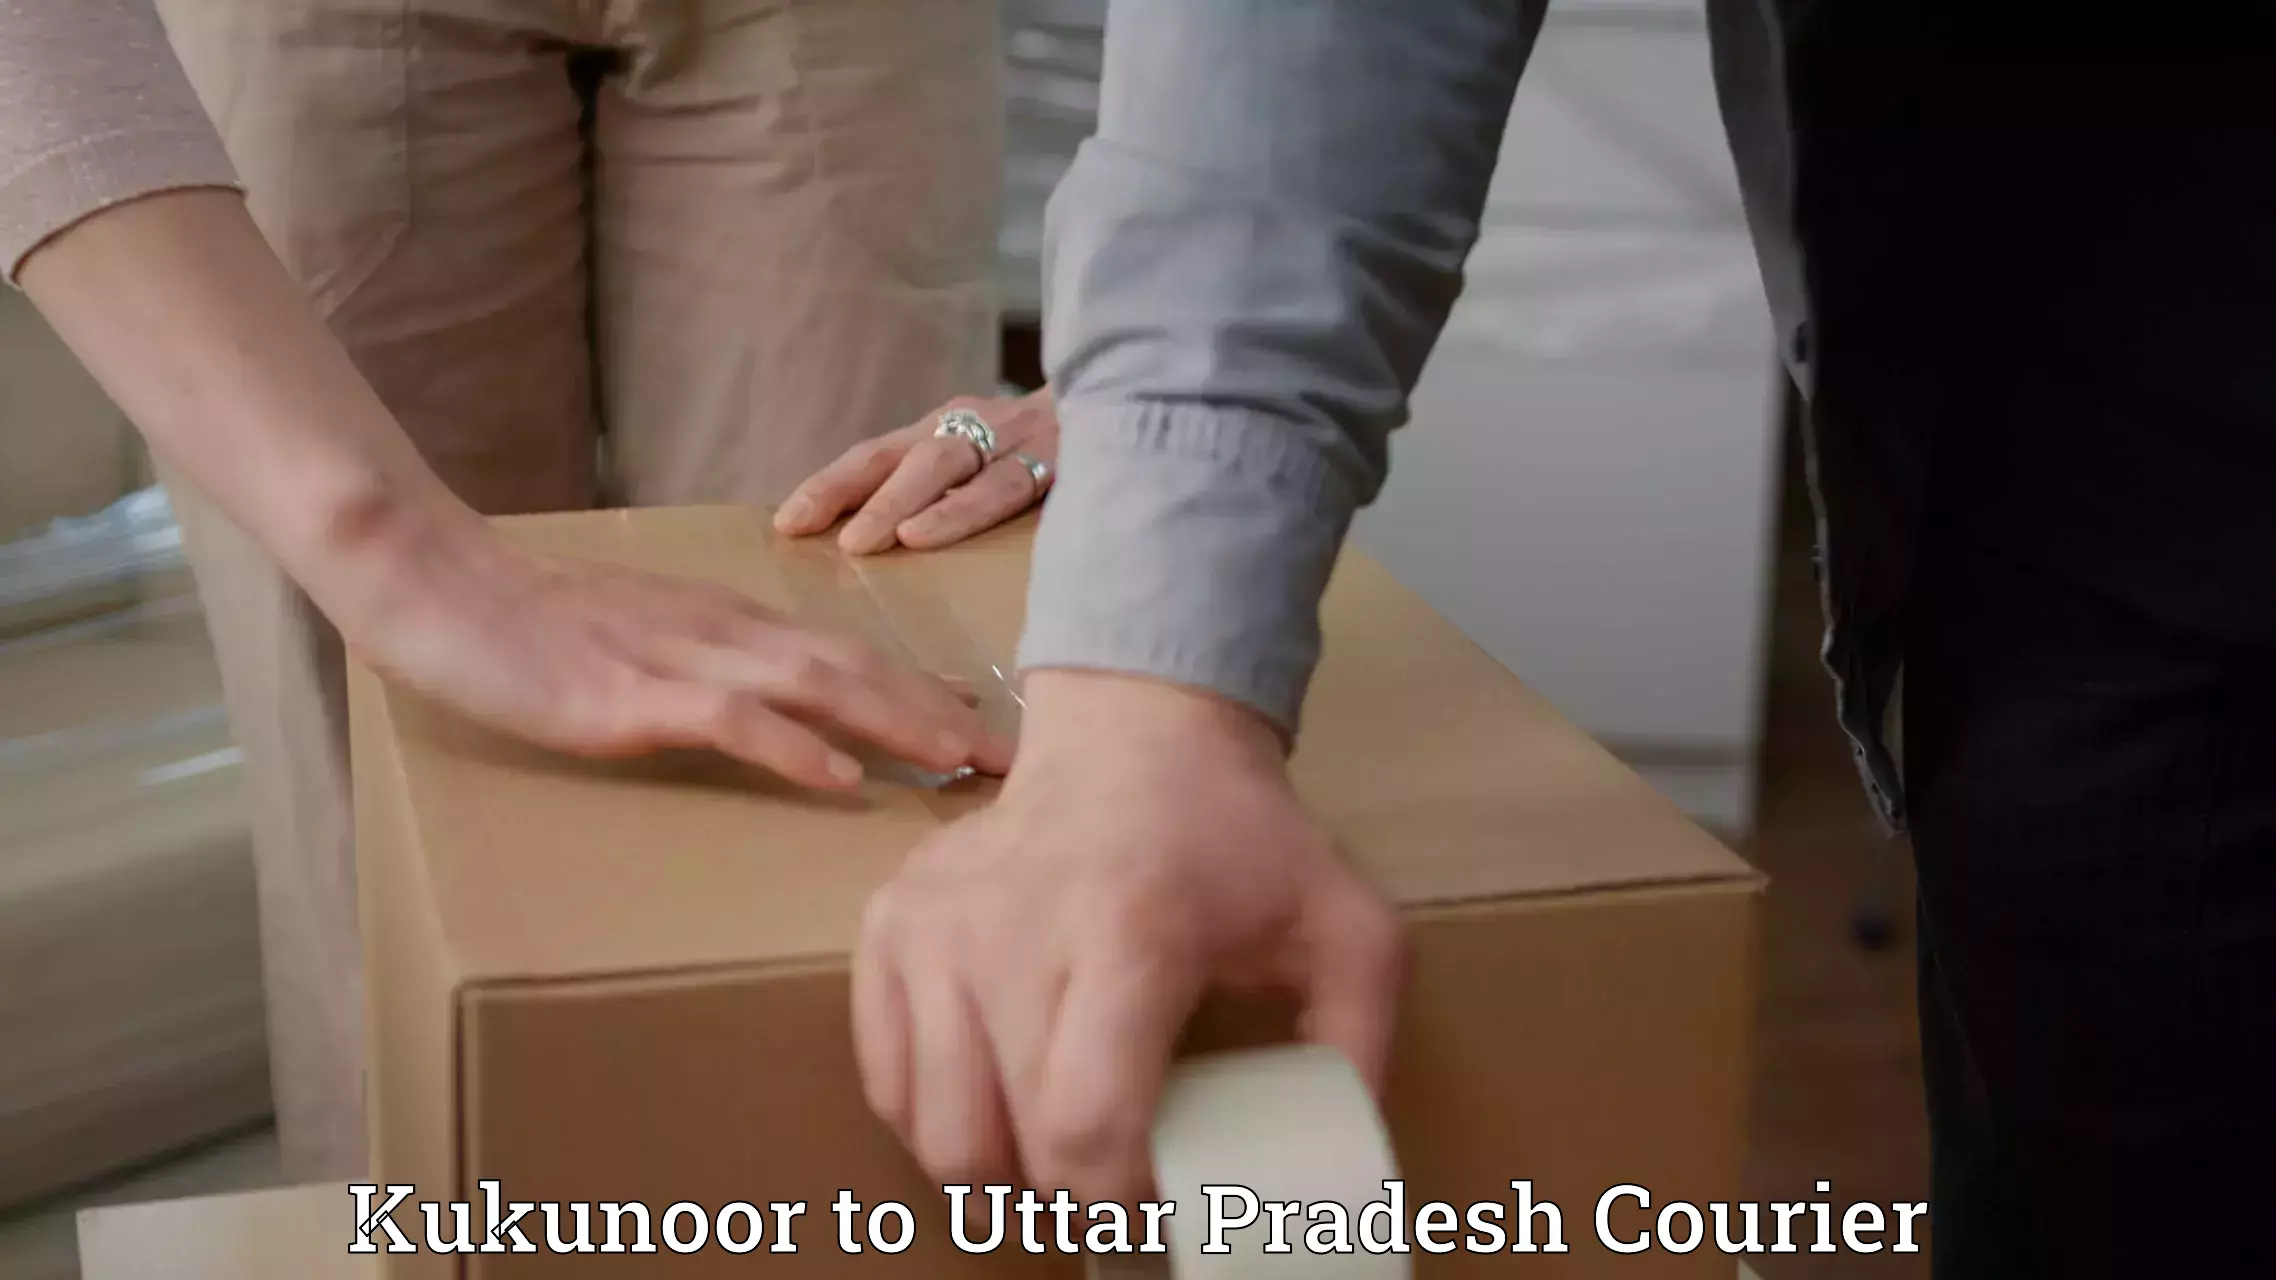 Speedy delivery service Kukunoor to Aligarh Muslim University